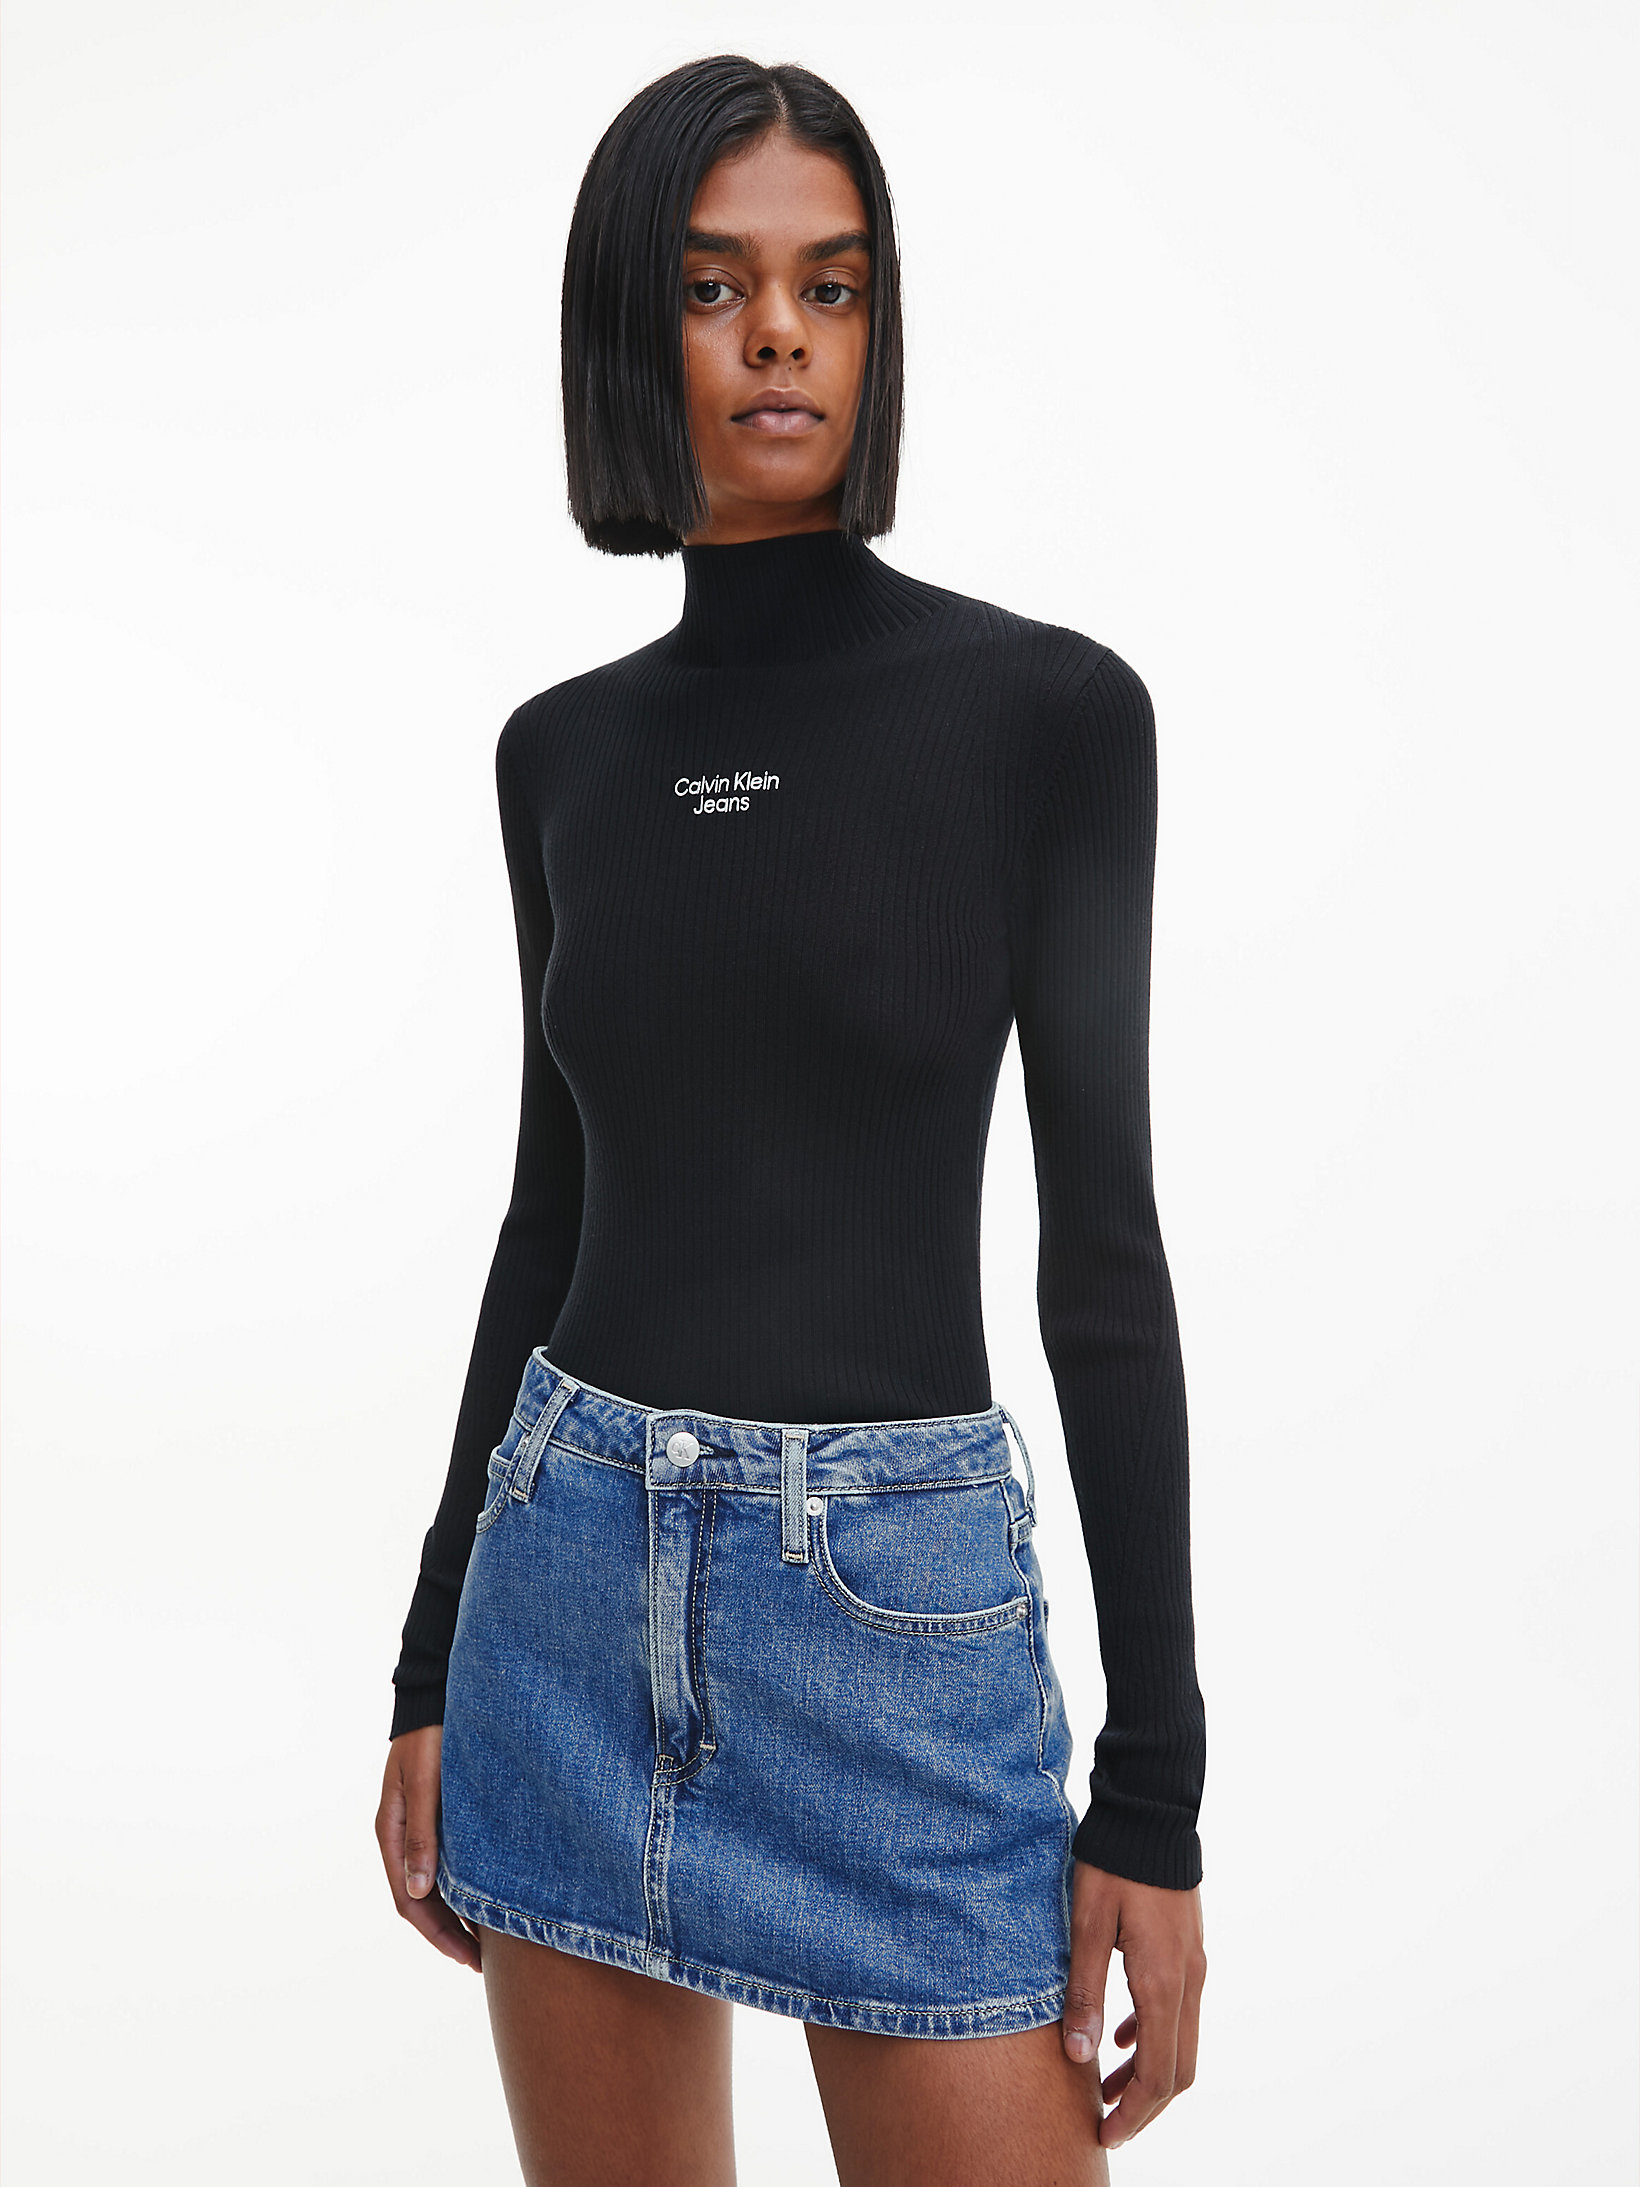 CK Black > Wąski Sweter Z Dzianiny śCiągaczowej > undefined Kobiety - Calvin Klein